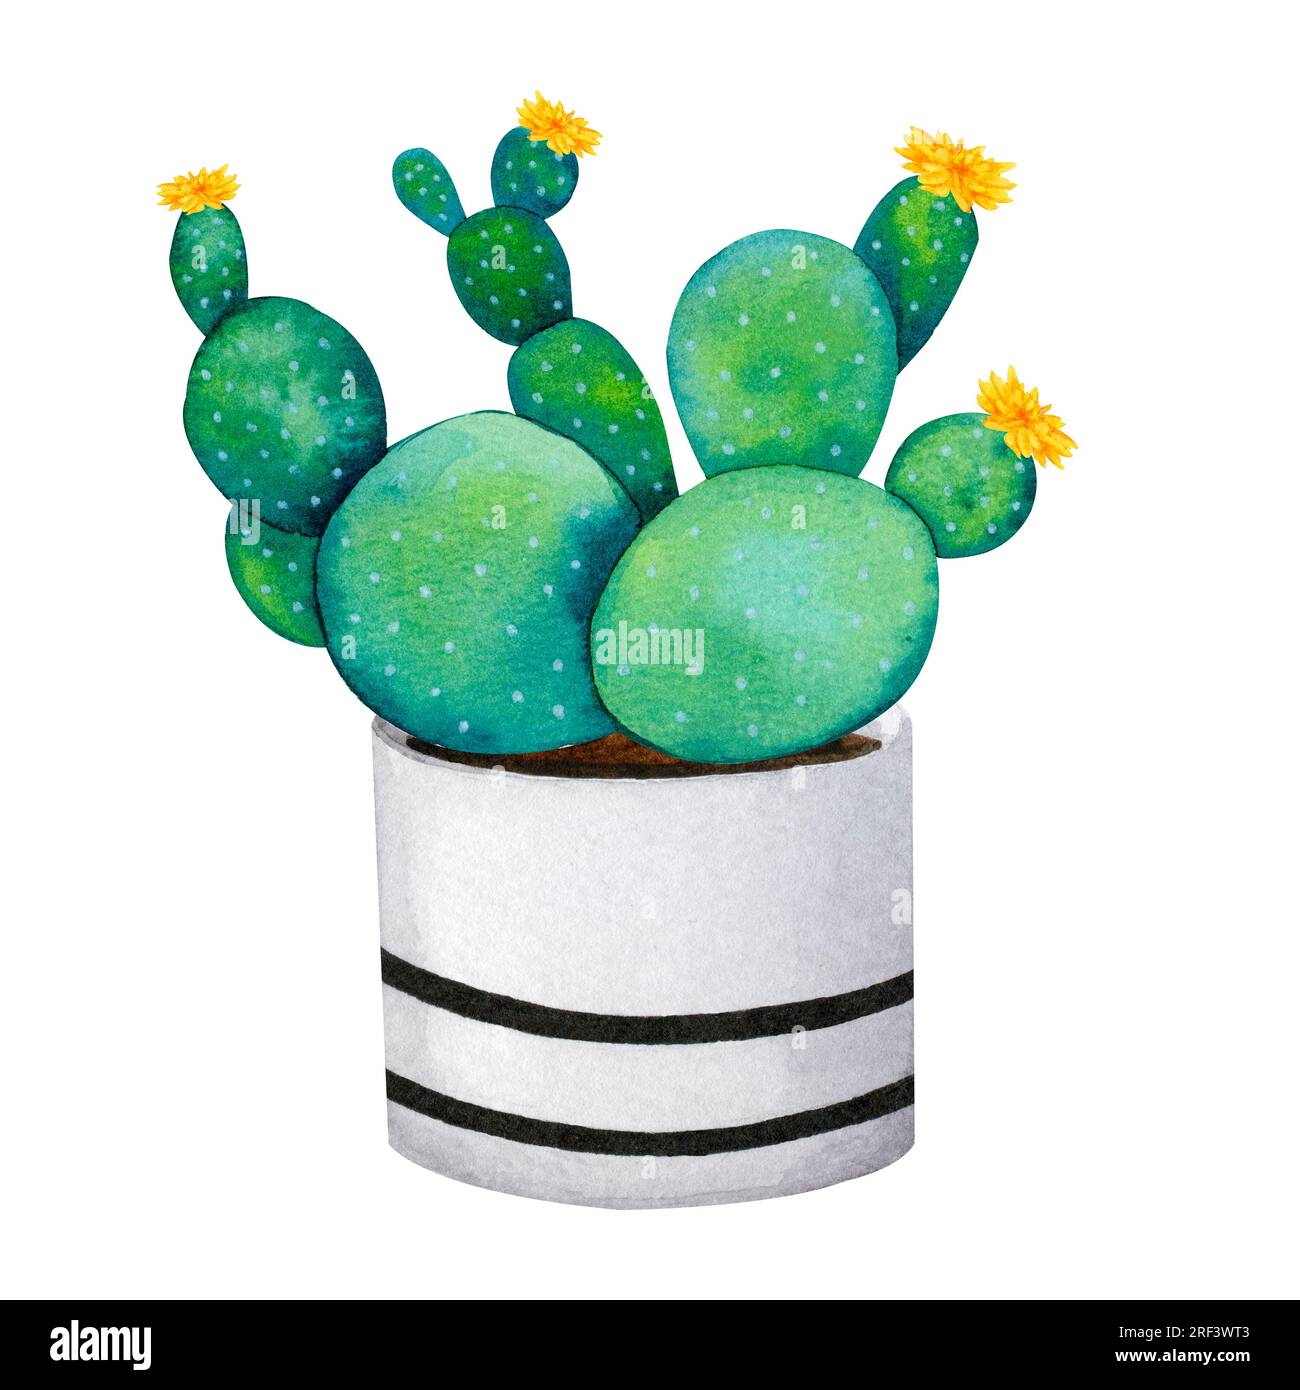 Cactus dans un pot en céramique. Boho, style scandinave. Clipart aquarelle pour la conception de cartes, logos, papeterie, impression, tissu, textile pour la maison. Banque D'Images